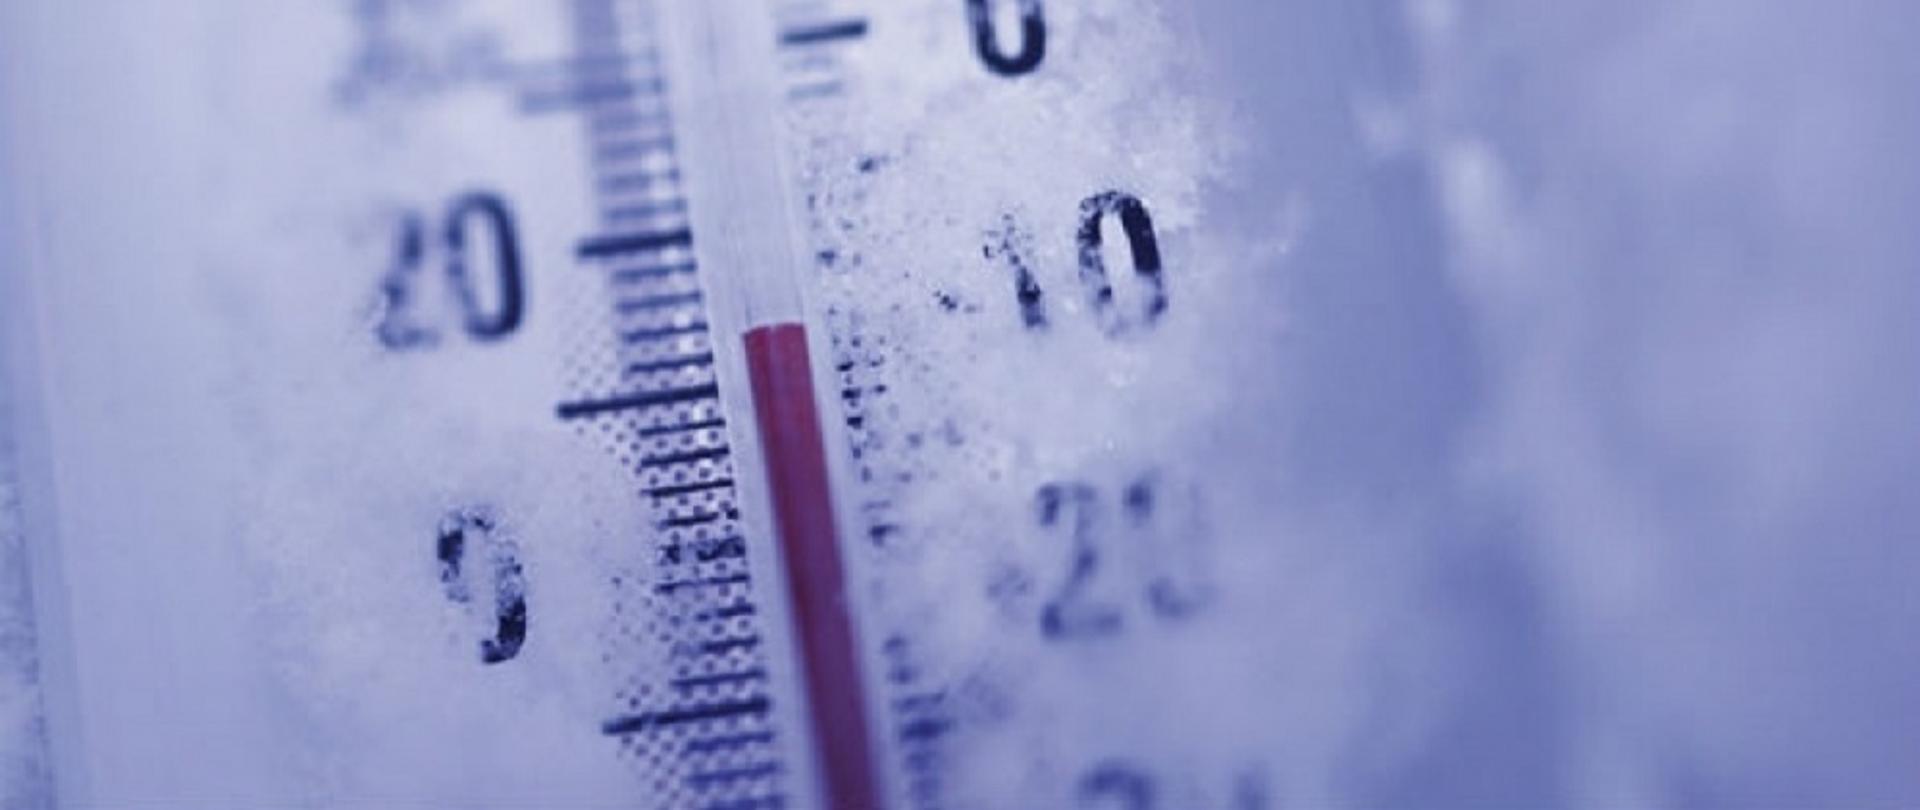 Zdjęcie przedstawia termometr na białym tle wskazujący temperaturę minus 8 stopni Celsjusza